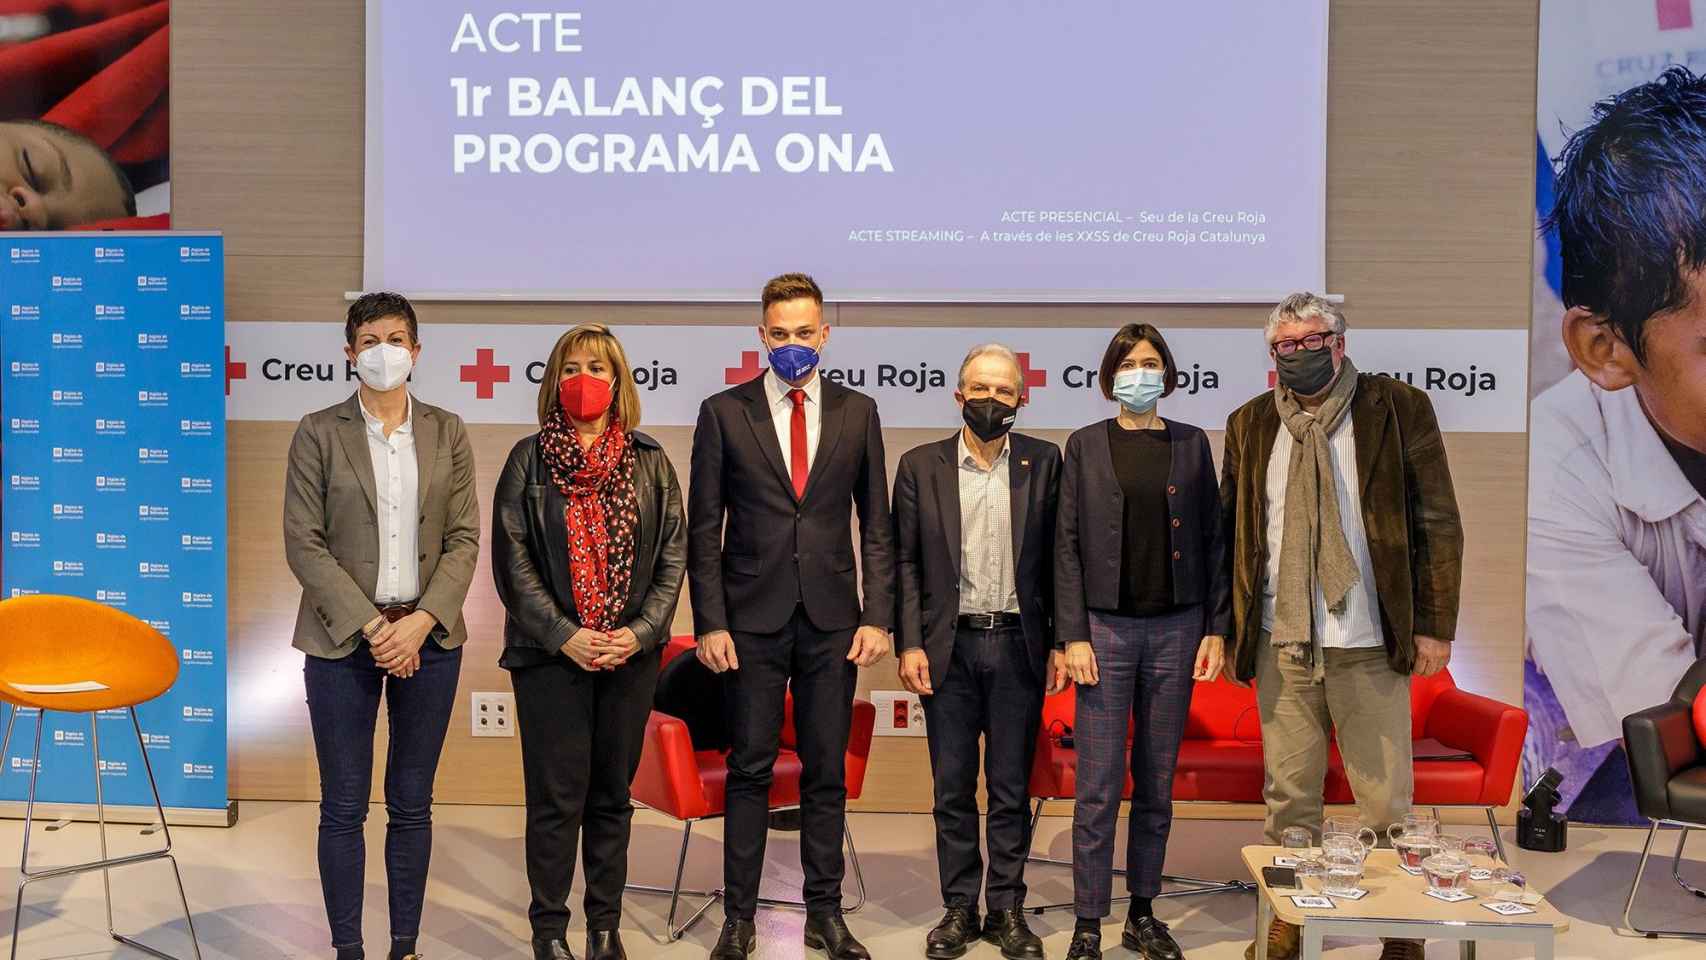 Acto celebrado en la sede de la Cruz Roja de la mano de Aigües de Barcelona